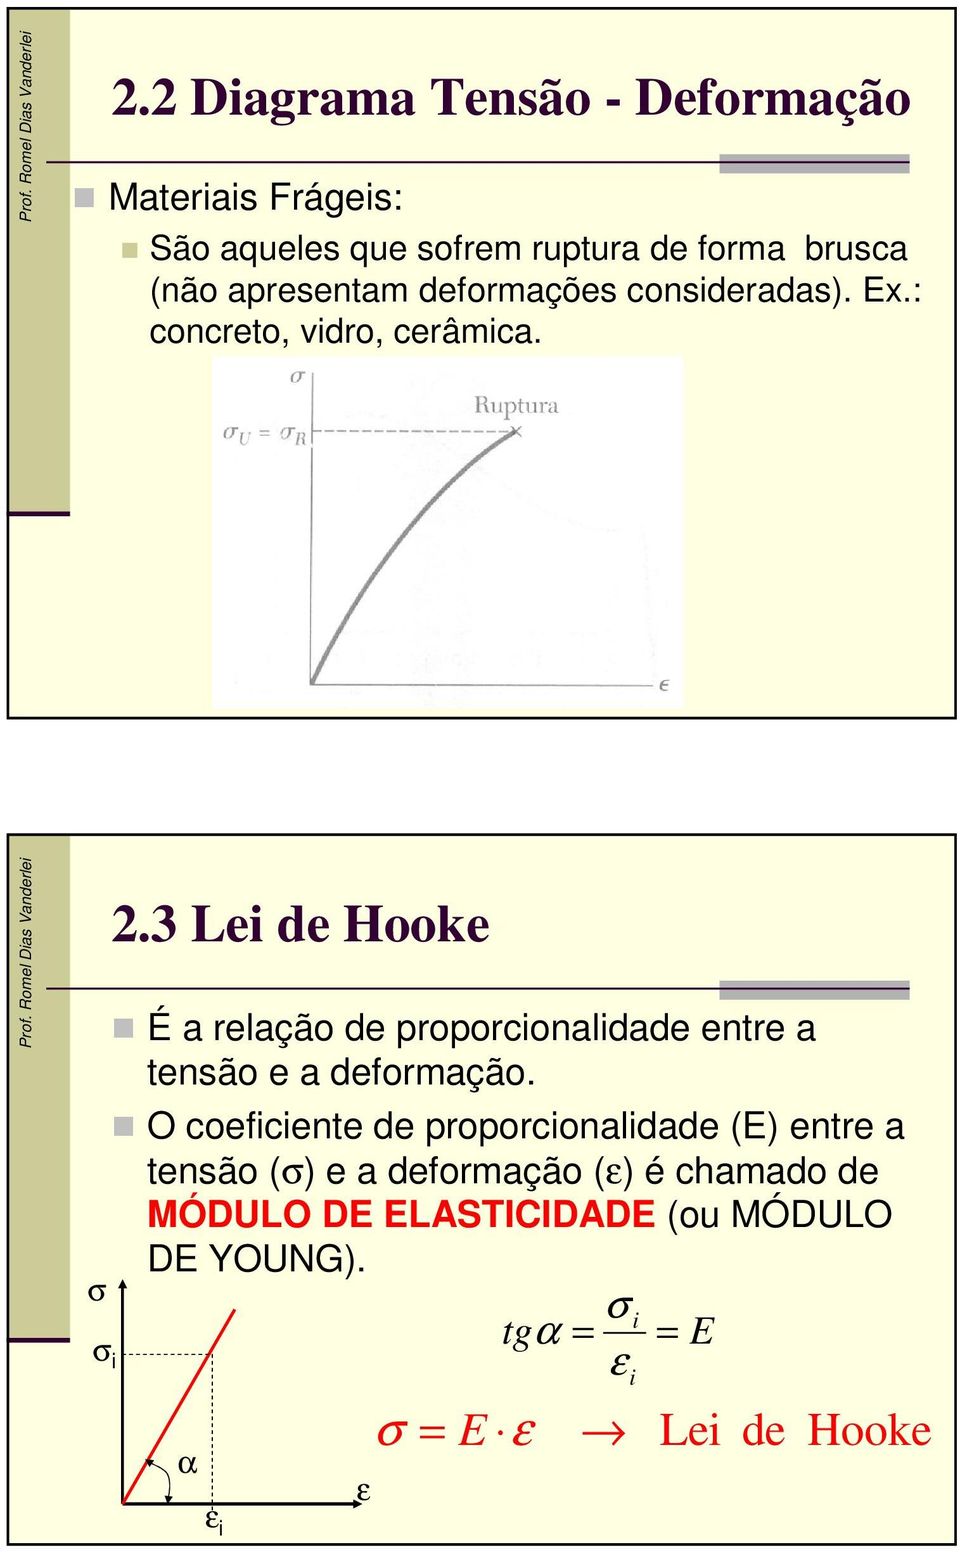 3 ei de Hooke É a relação de proporcionalidade entre a tensão e a deformação.